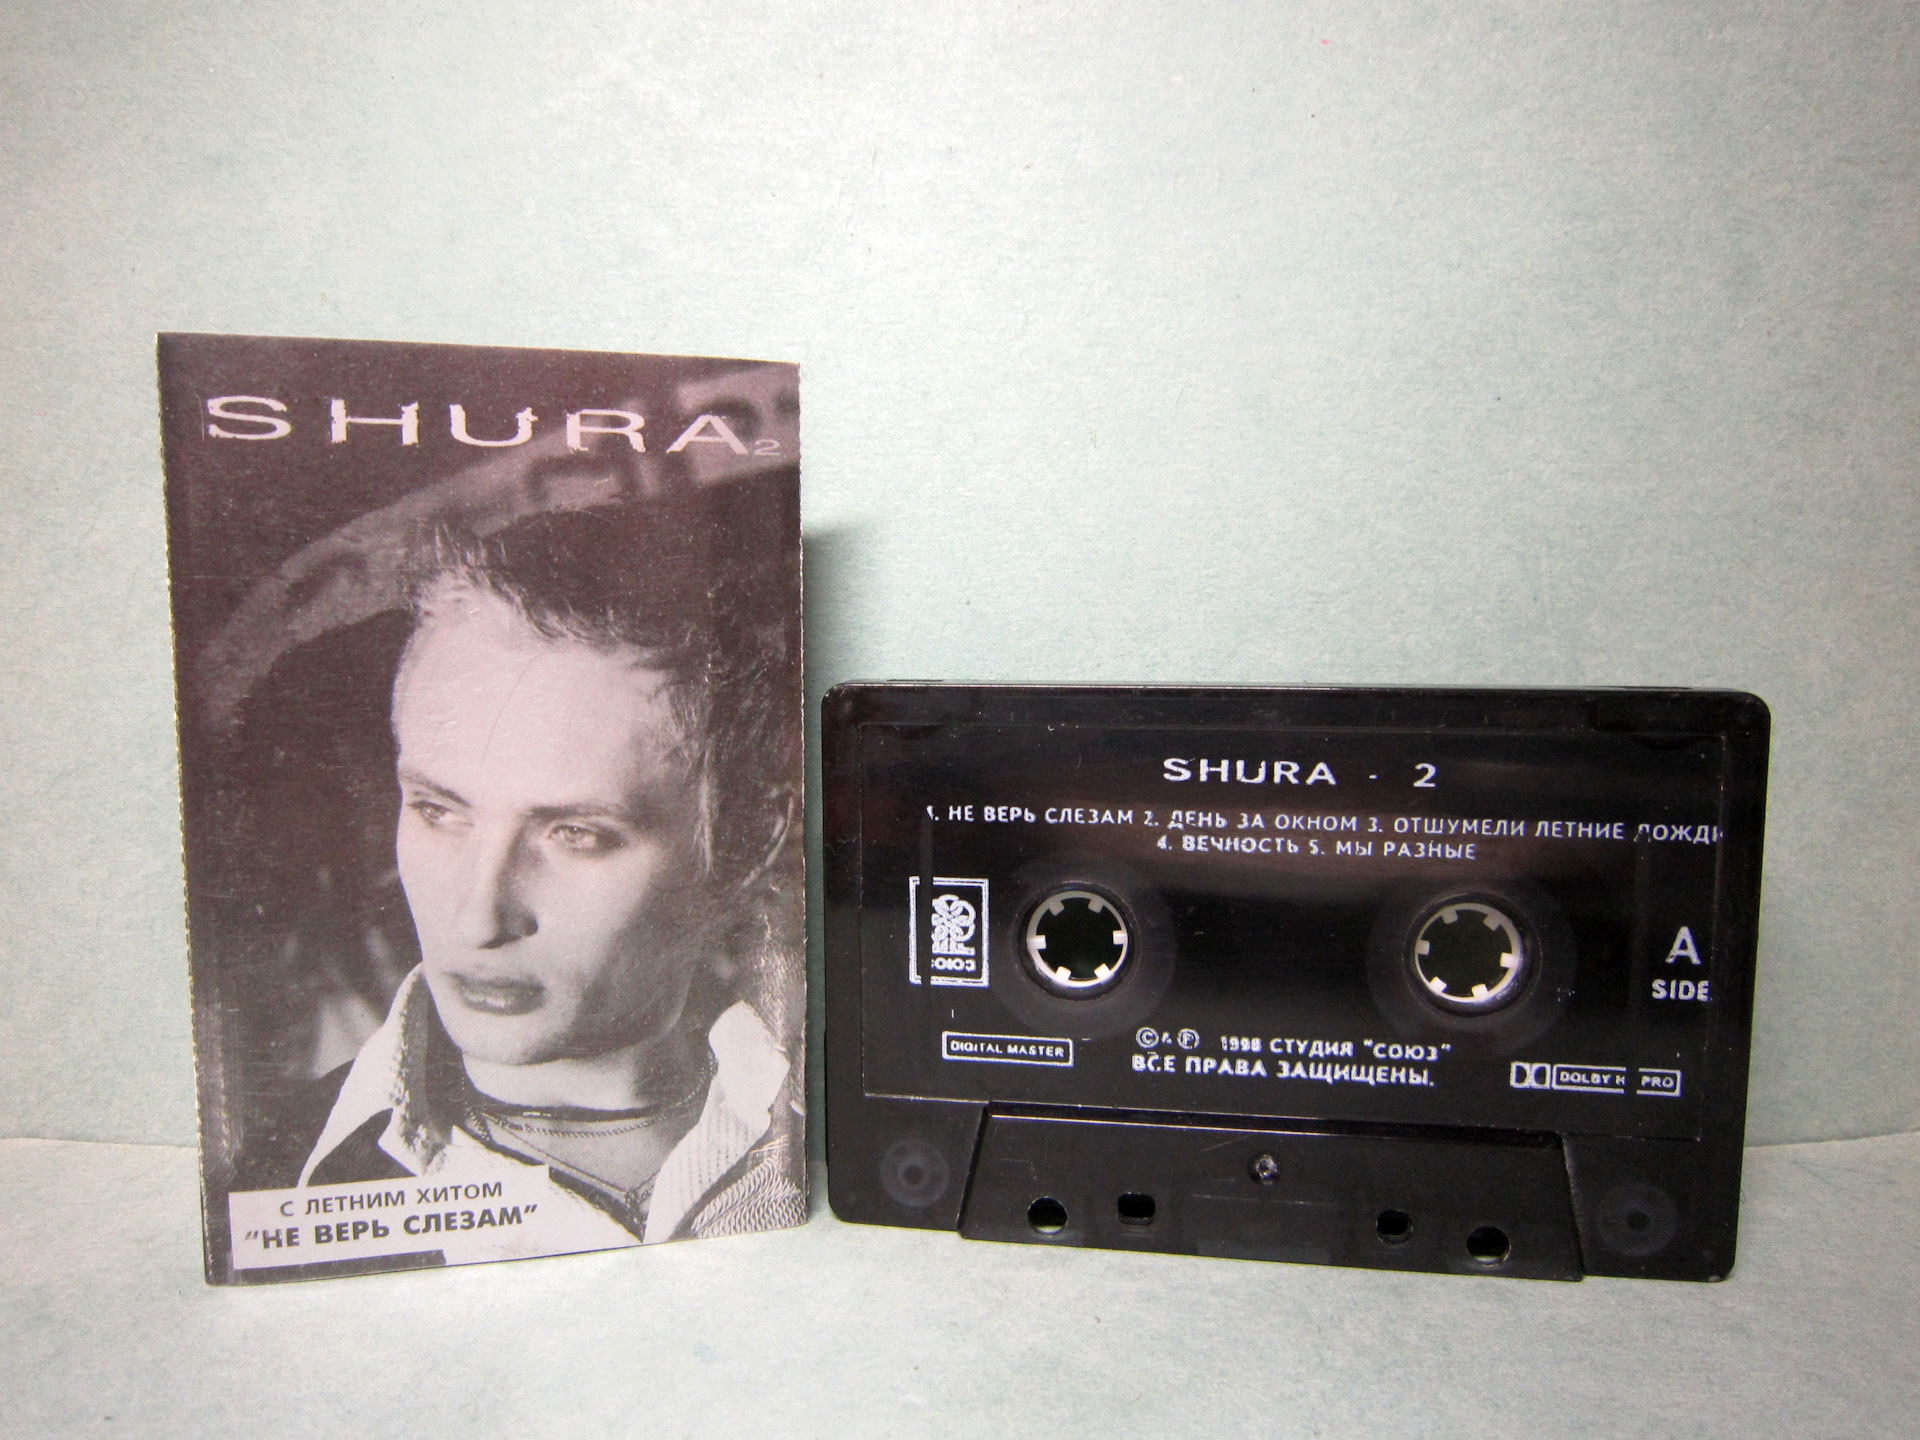 Ты не верь слезам mp3. Shura 2 Шура кассета. Аудиокассеты Шура. Обложка аудиокассеты Шура. Первая кассета Шуры.